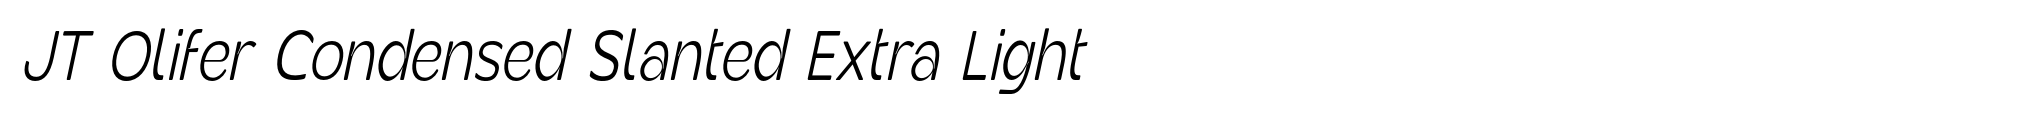 JT Olifer Condensed Slanted Extra Light image